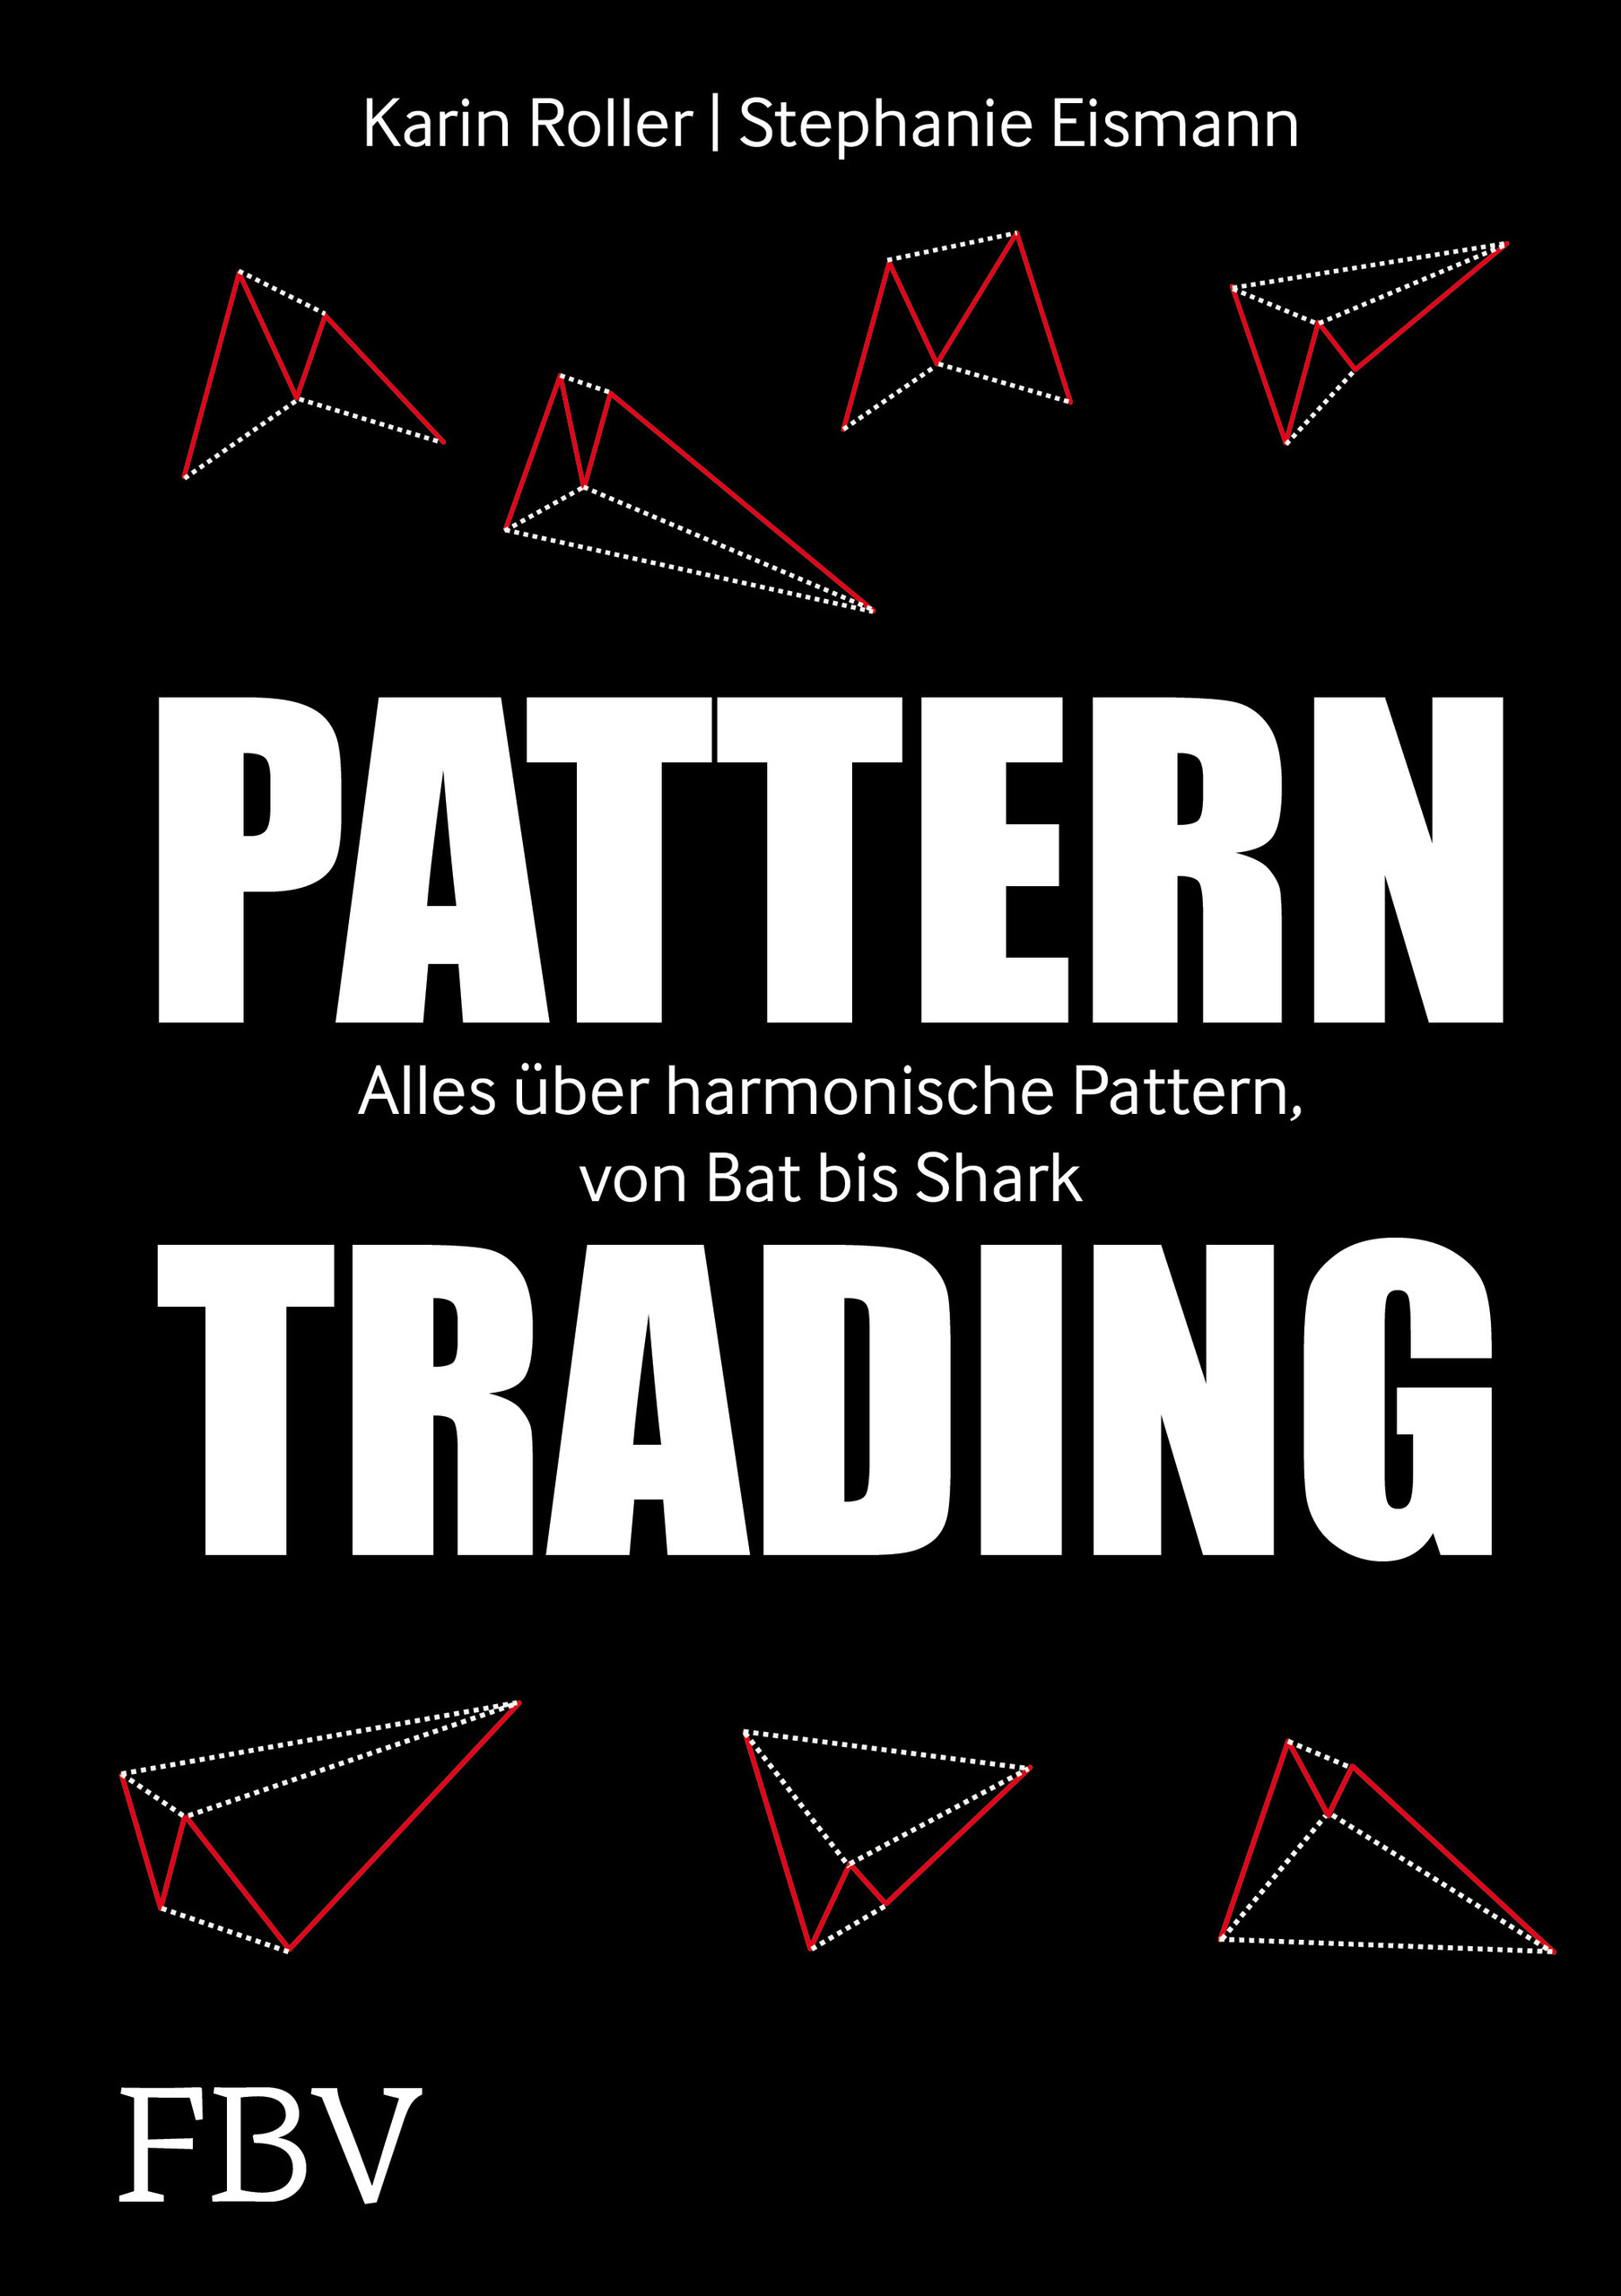 Karin Roller; Stephanie Eismann / Pattern-Trading - Bild 1 von 1